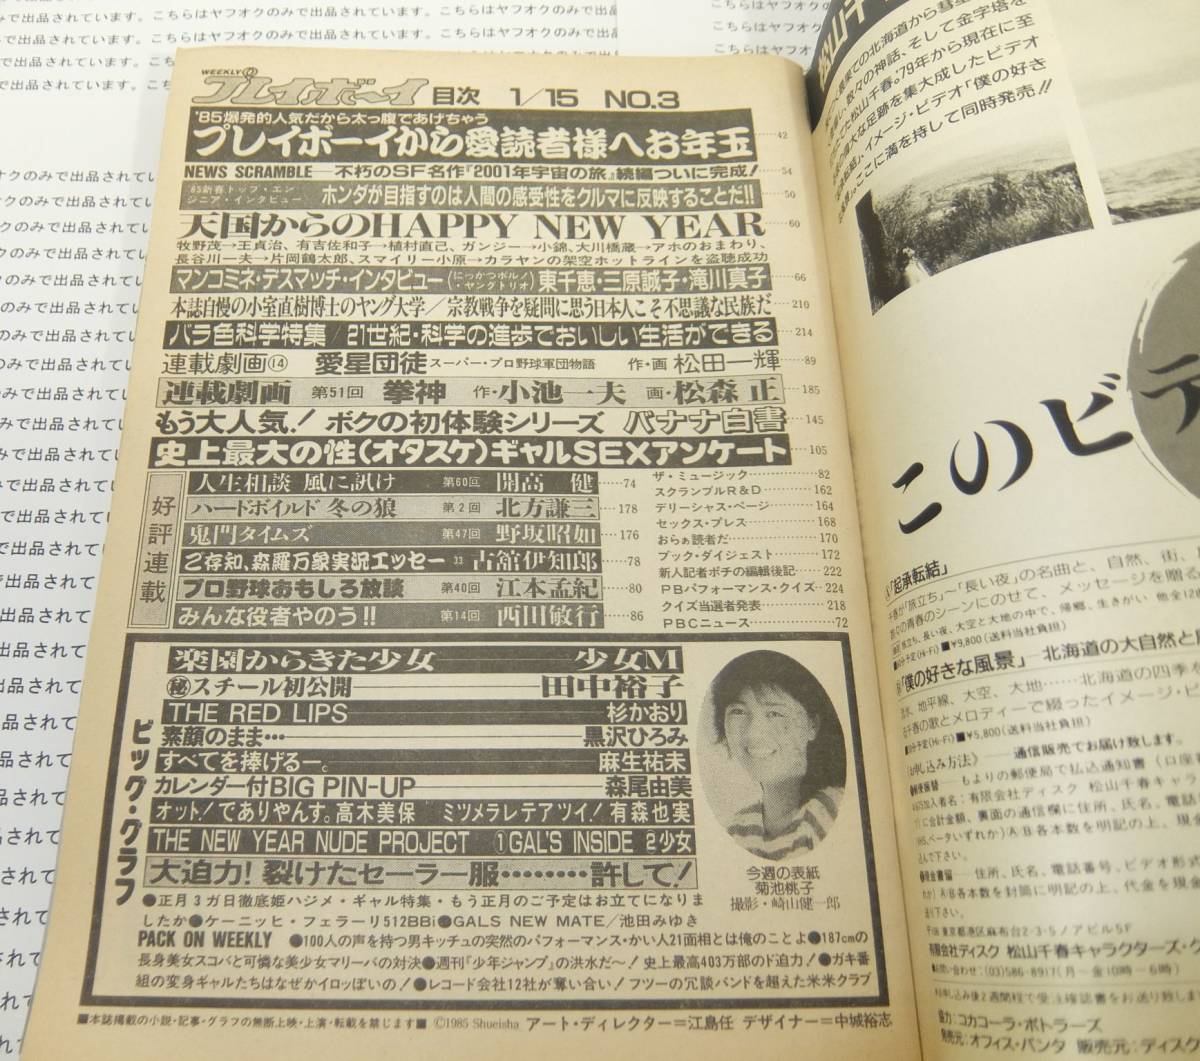 ☆ 雑誌 週刊プレイボーイ 昭和60年 1985年1月15日 NO.3 集英社